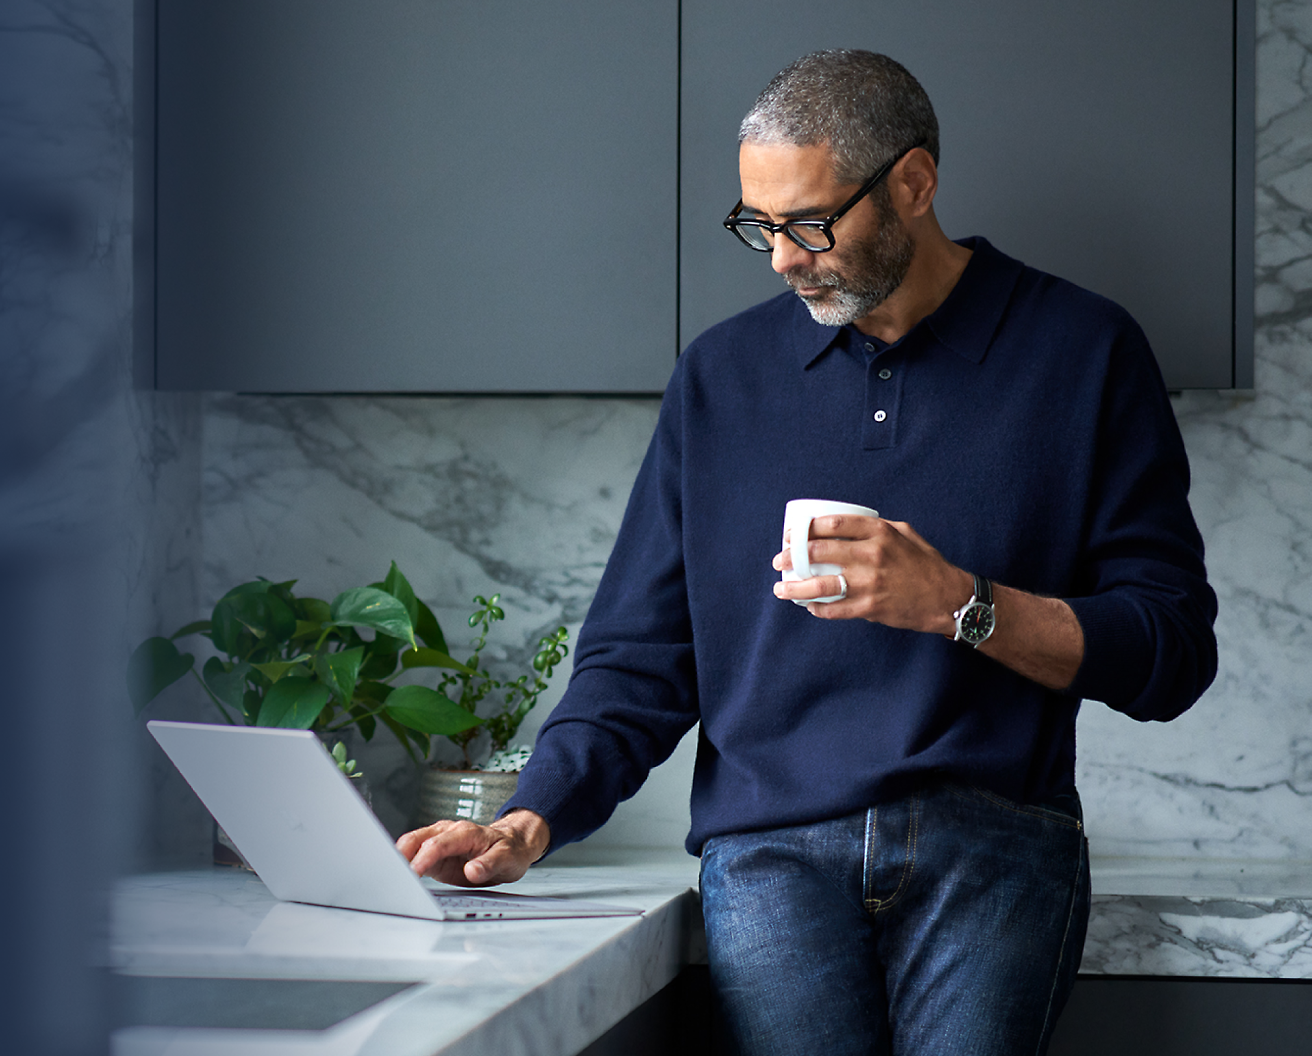 Midaldrende mand med briller, som holder en kaffekop og bruger en bærbar computer i et moderne køkken.